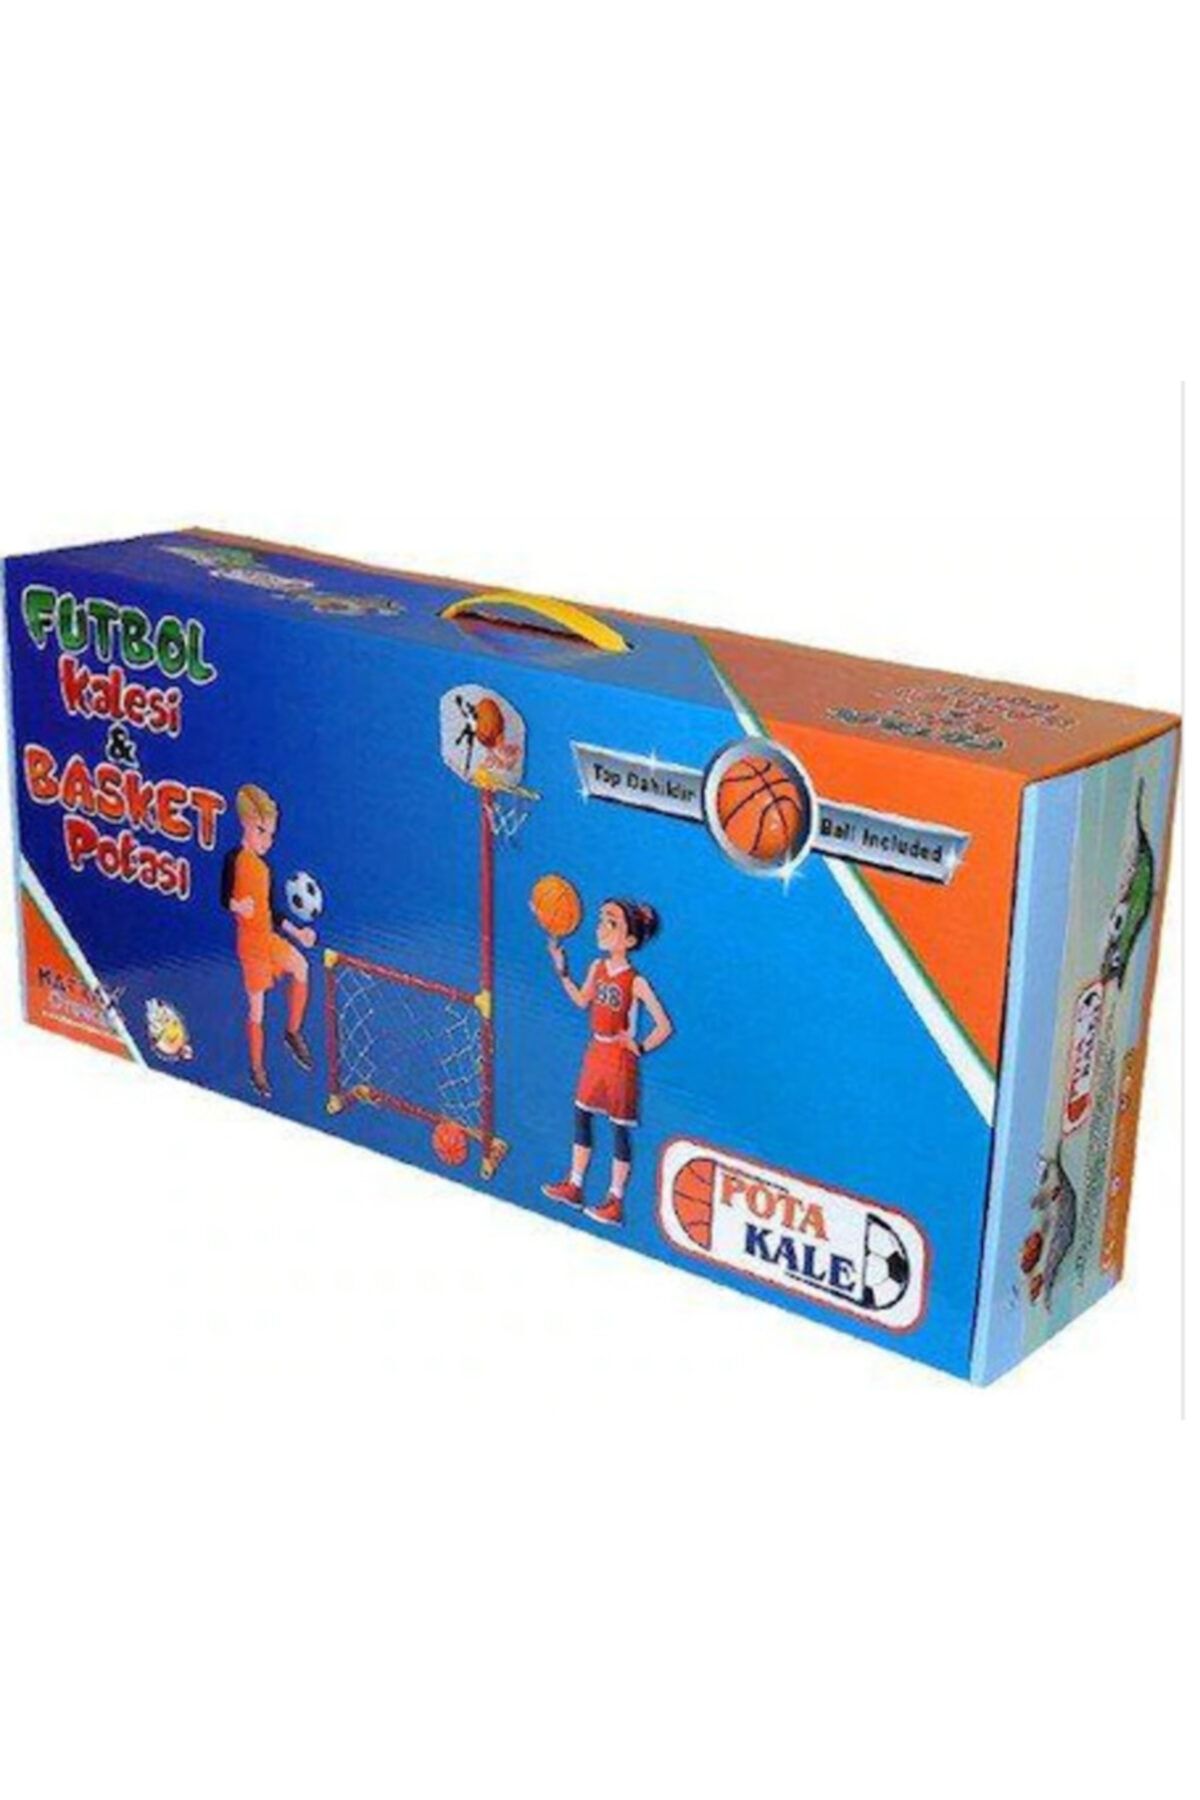 Matrax Oyuncak Portatif Kale - Basket Potası Oyun Seti